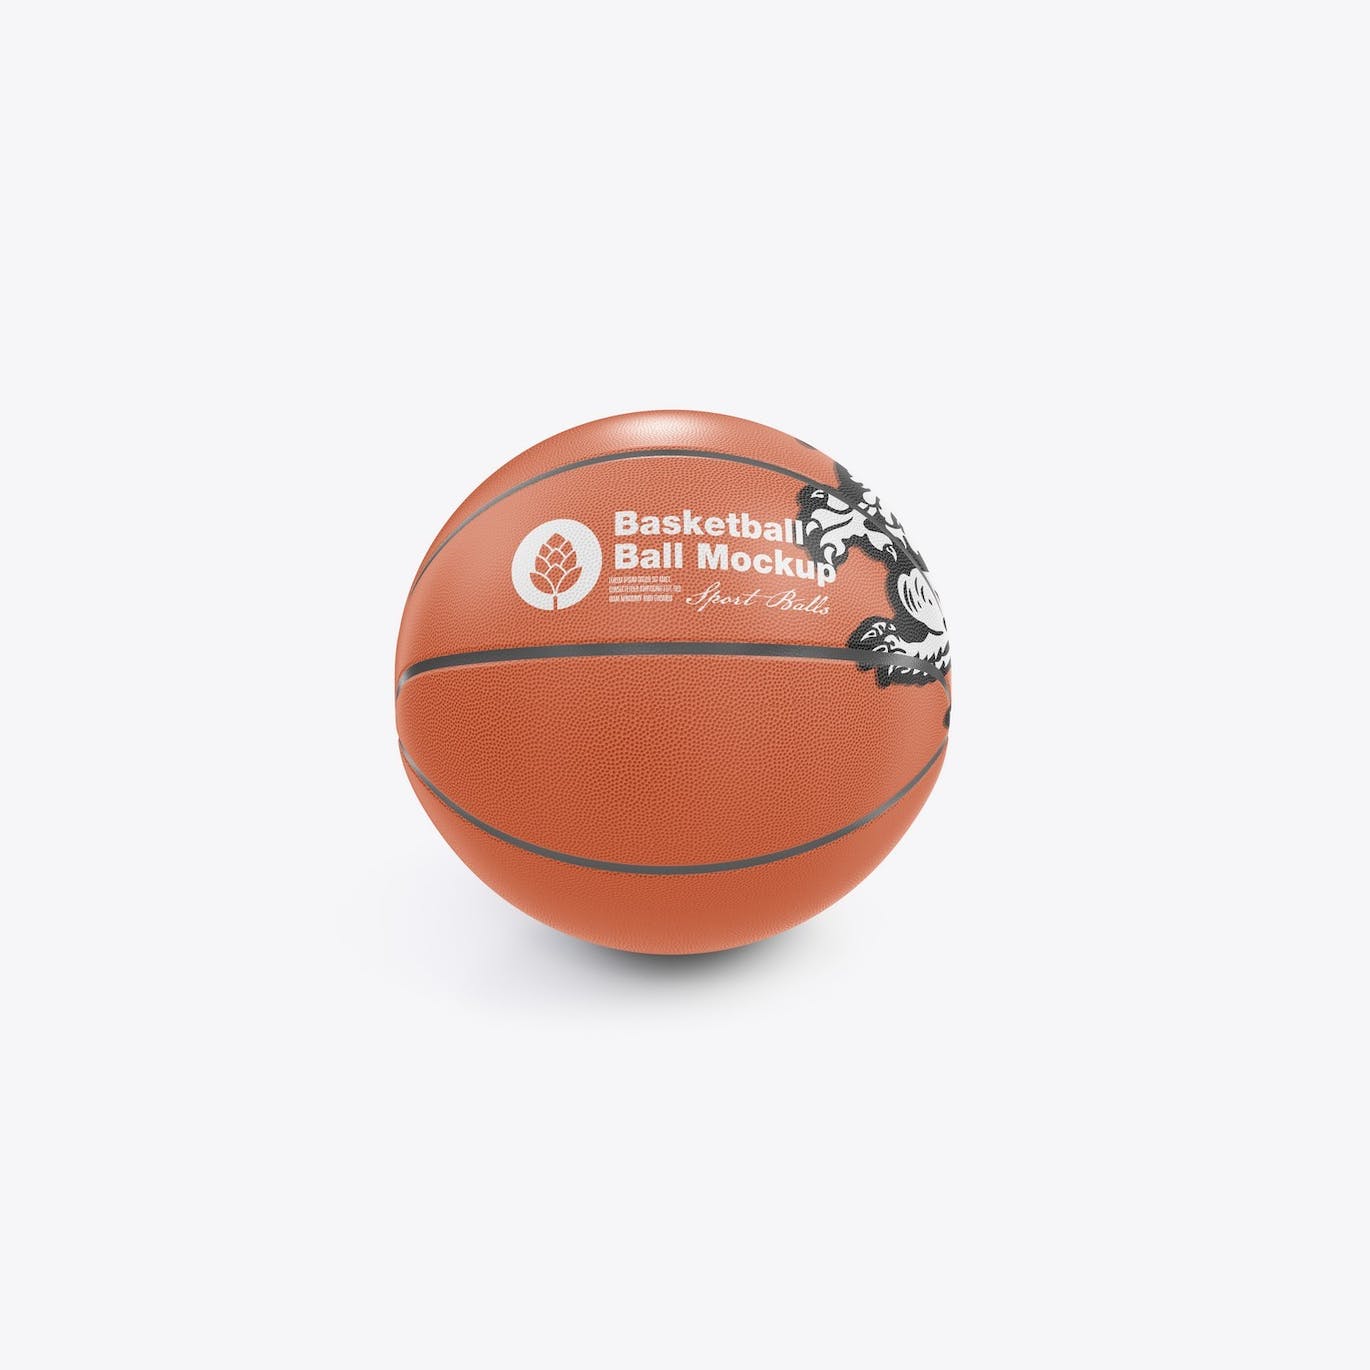 篮球运动品牌设计样机 Basketball Ball Mockup 样机素材 第9张